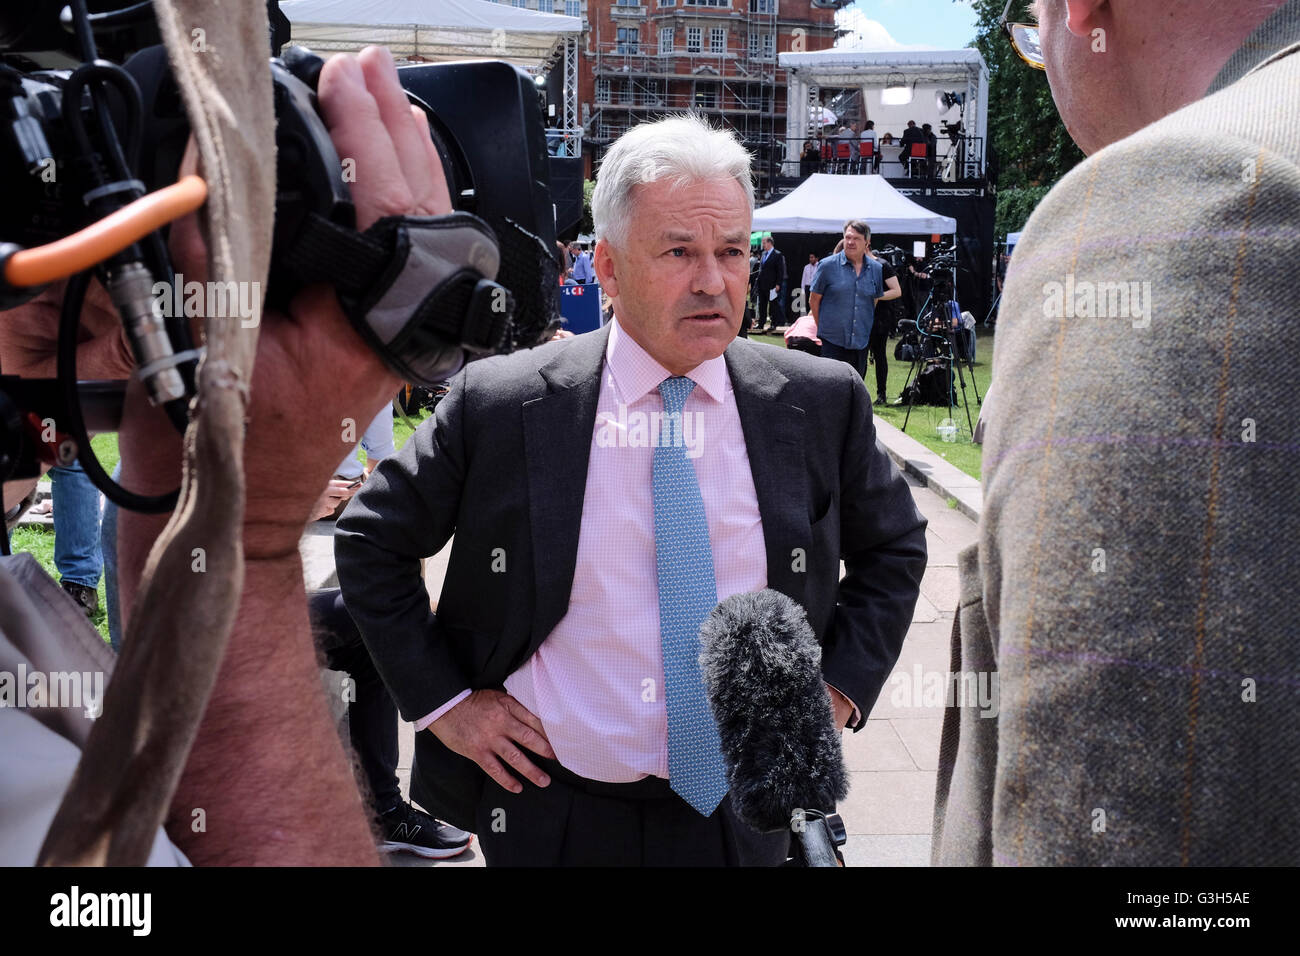 Londra, Regno Unito. 24 giugno 2016. Il deputato conservatore, Sir Alan Duncan, è intervistato per le notizie televisive, Westminster, Londra. Foto Stock